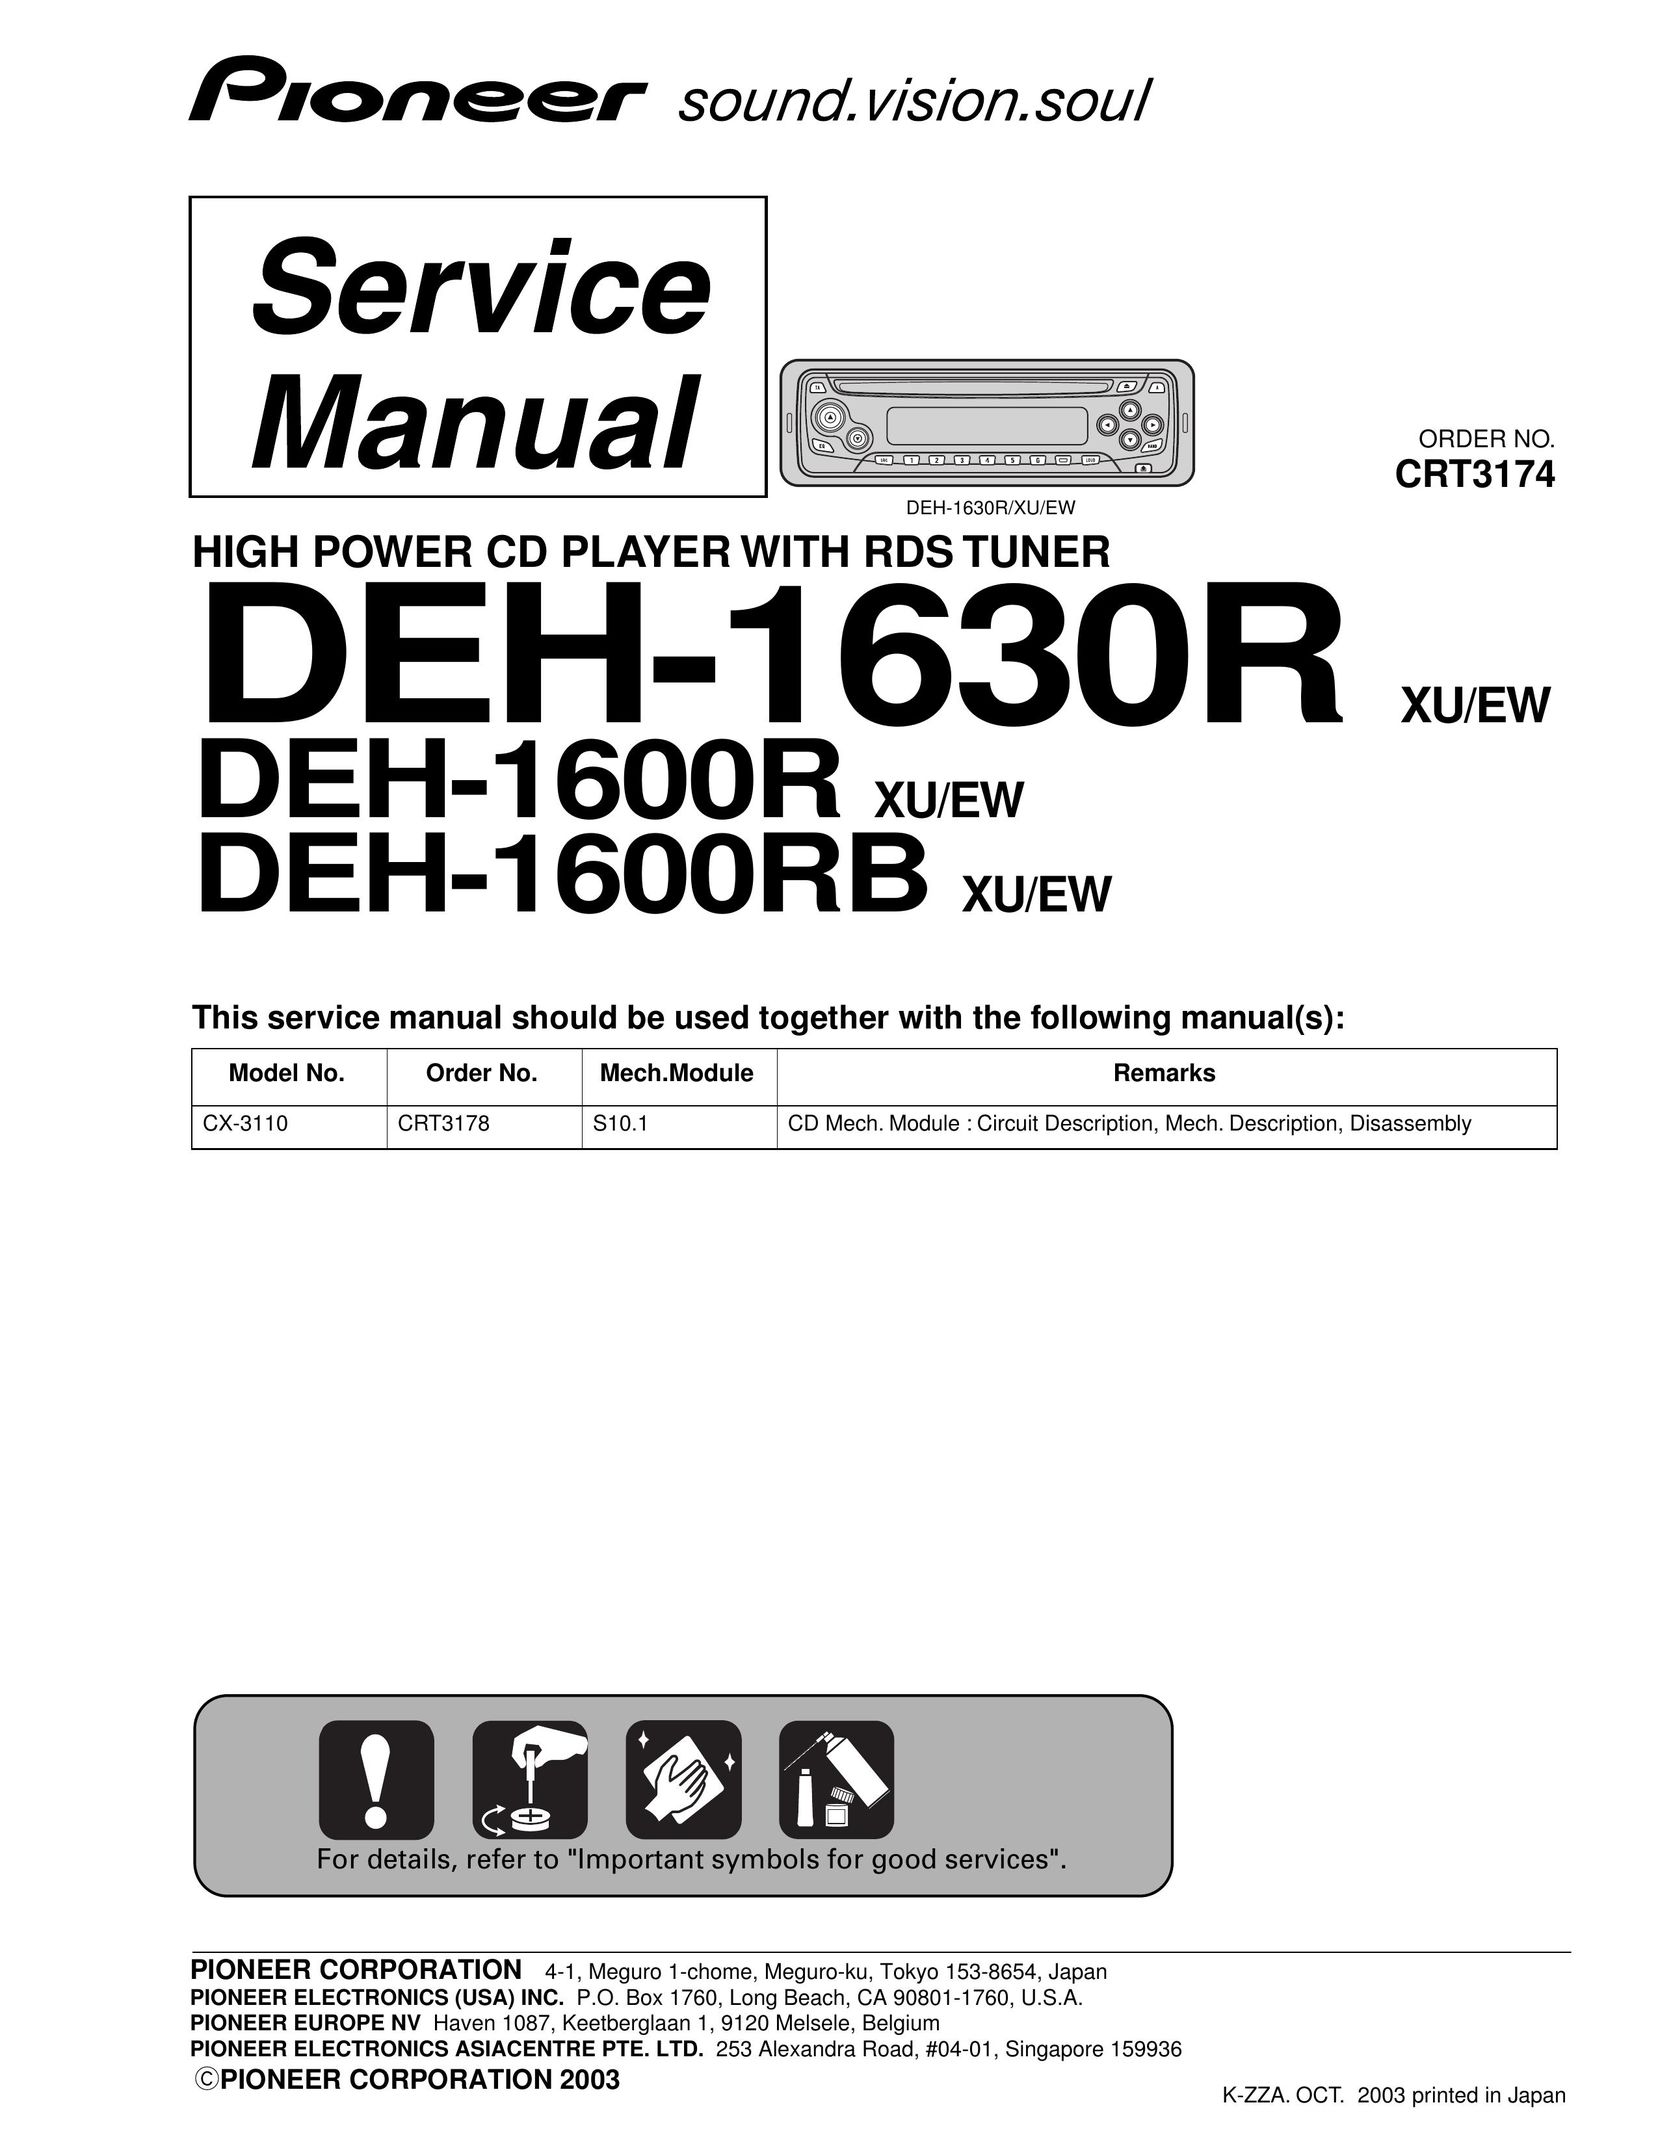 Pioneer DEH-1600R CD Player User Manual